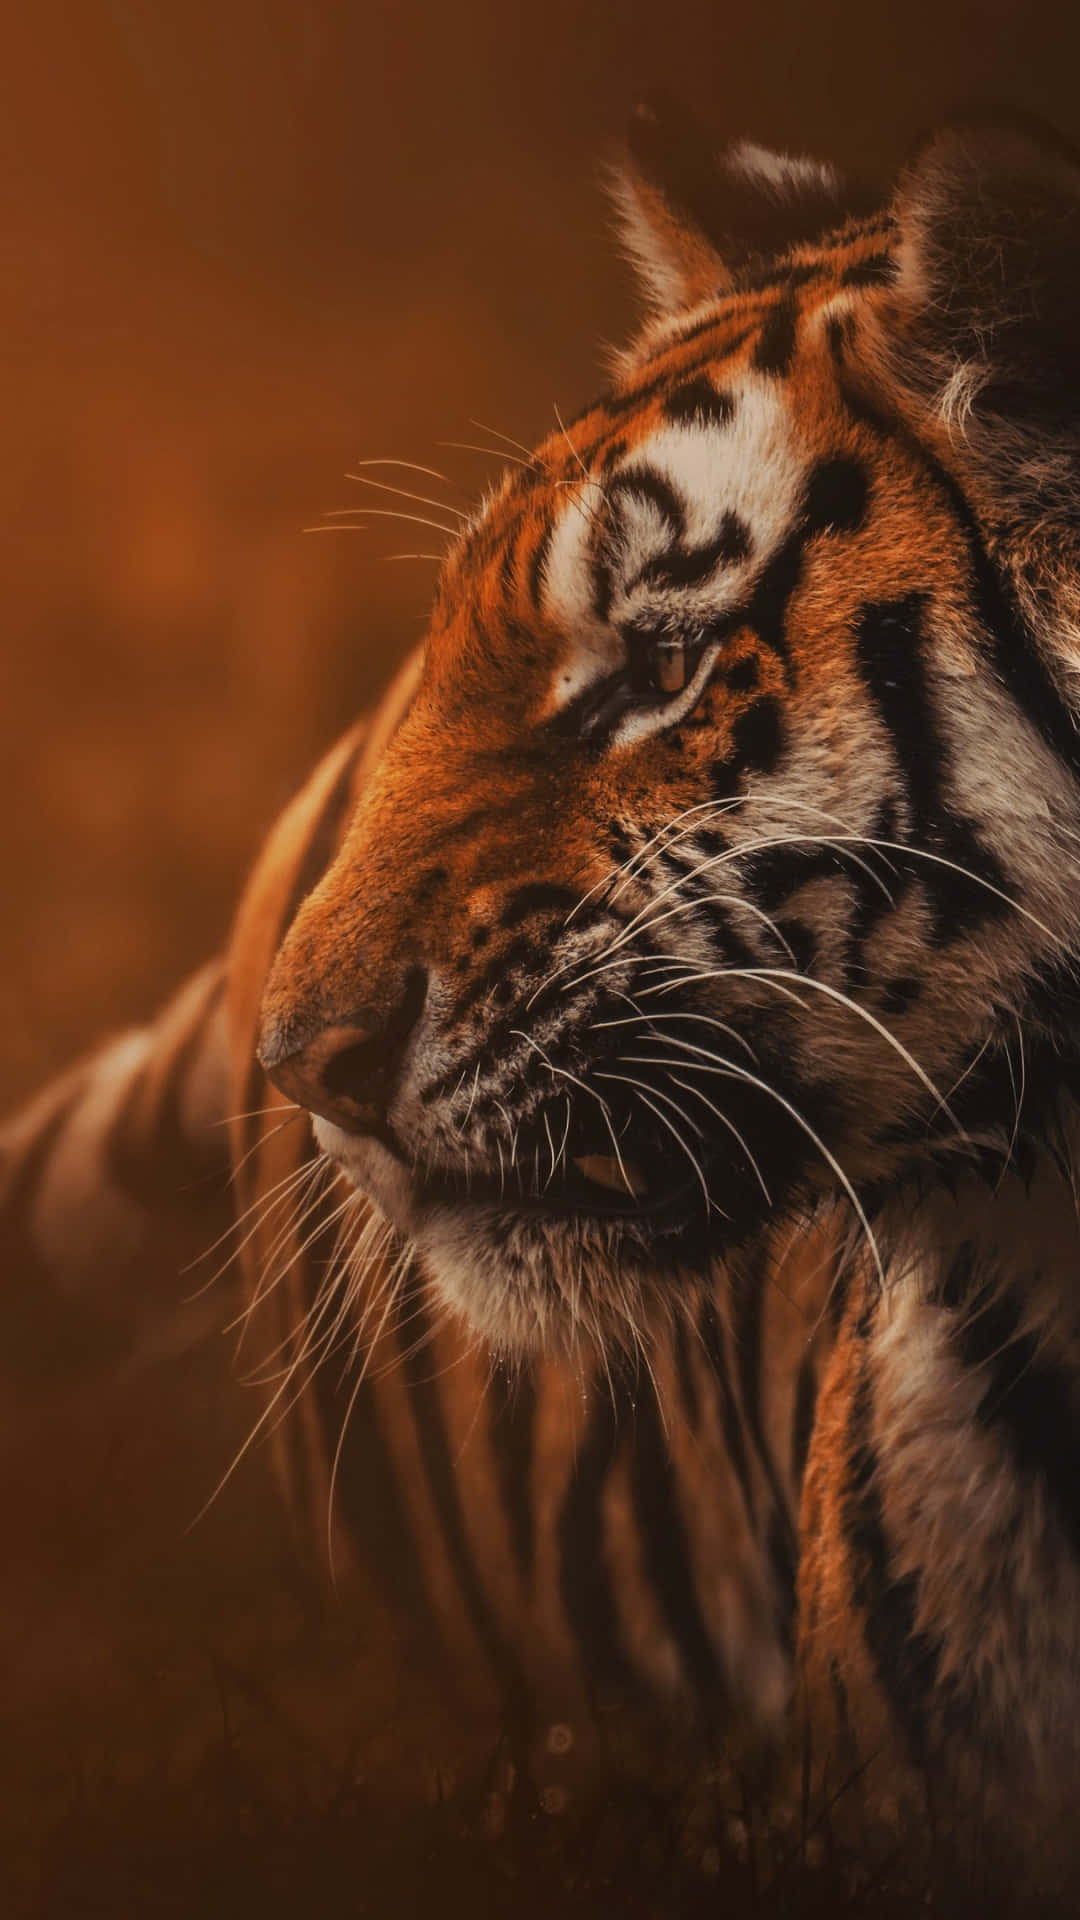 30 4K HD Tiger Wallpapers  WallpaperSafari